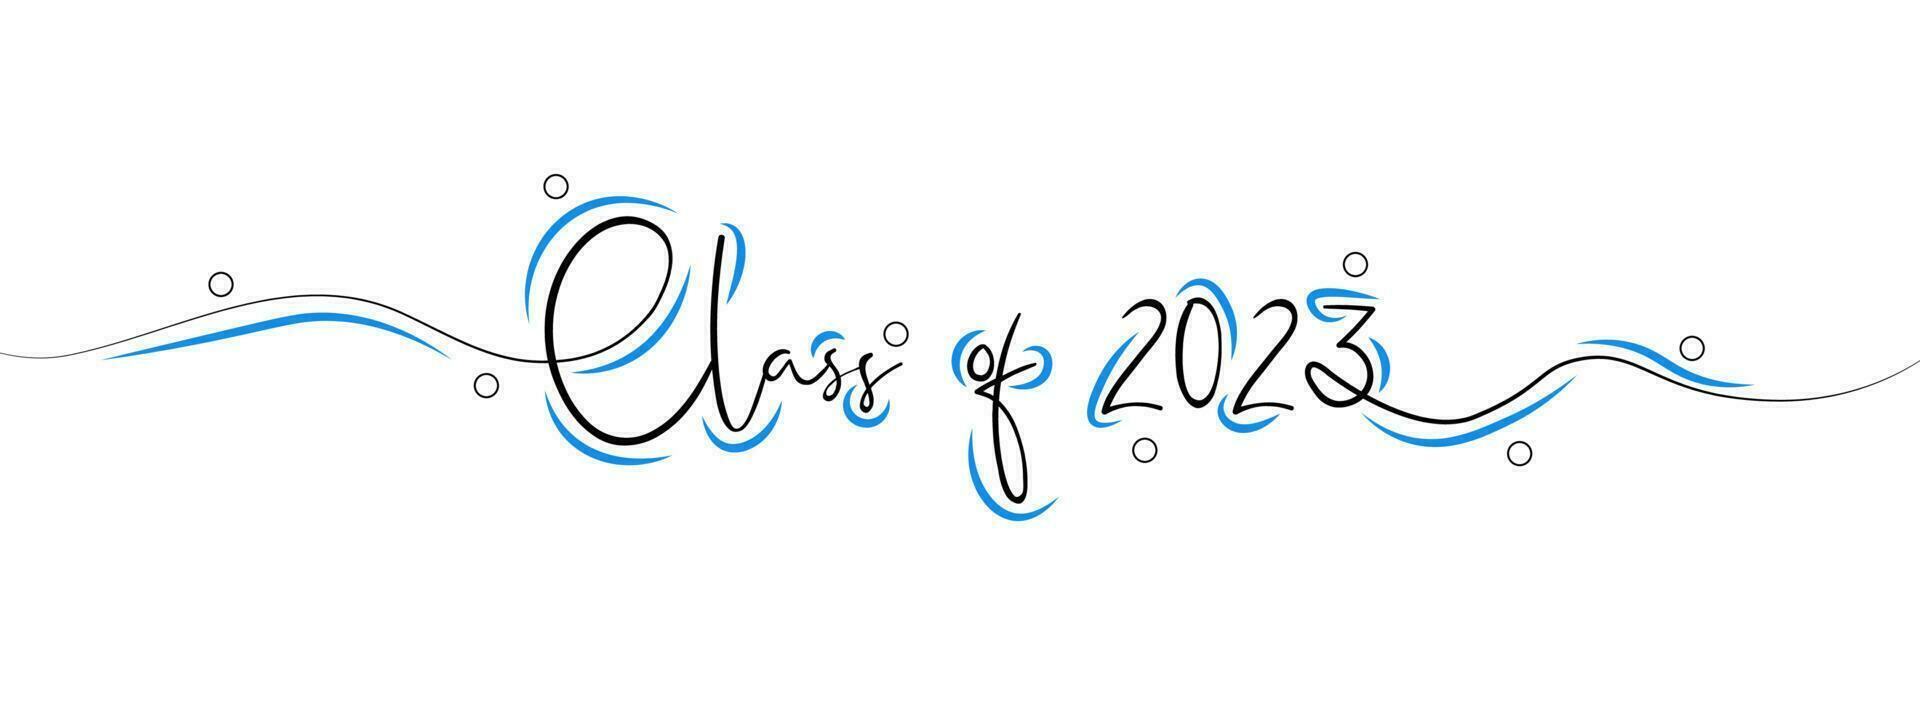 klass av 2023. stiliserade calligraphic inskrift klass av 2023 i ett linje. enkel stil. vektor illustration.